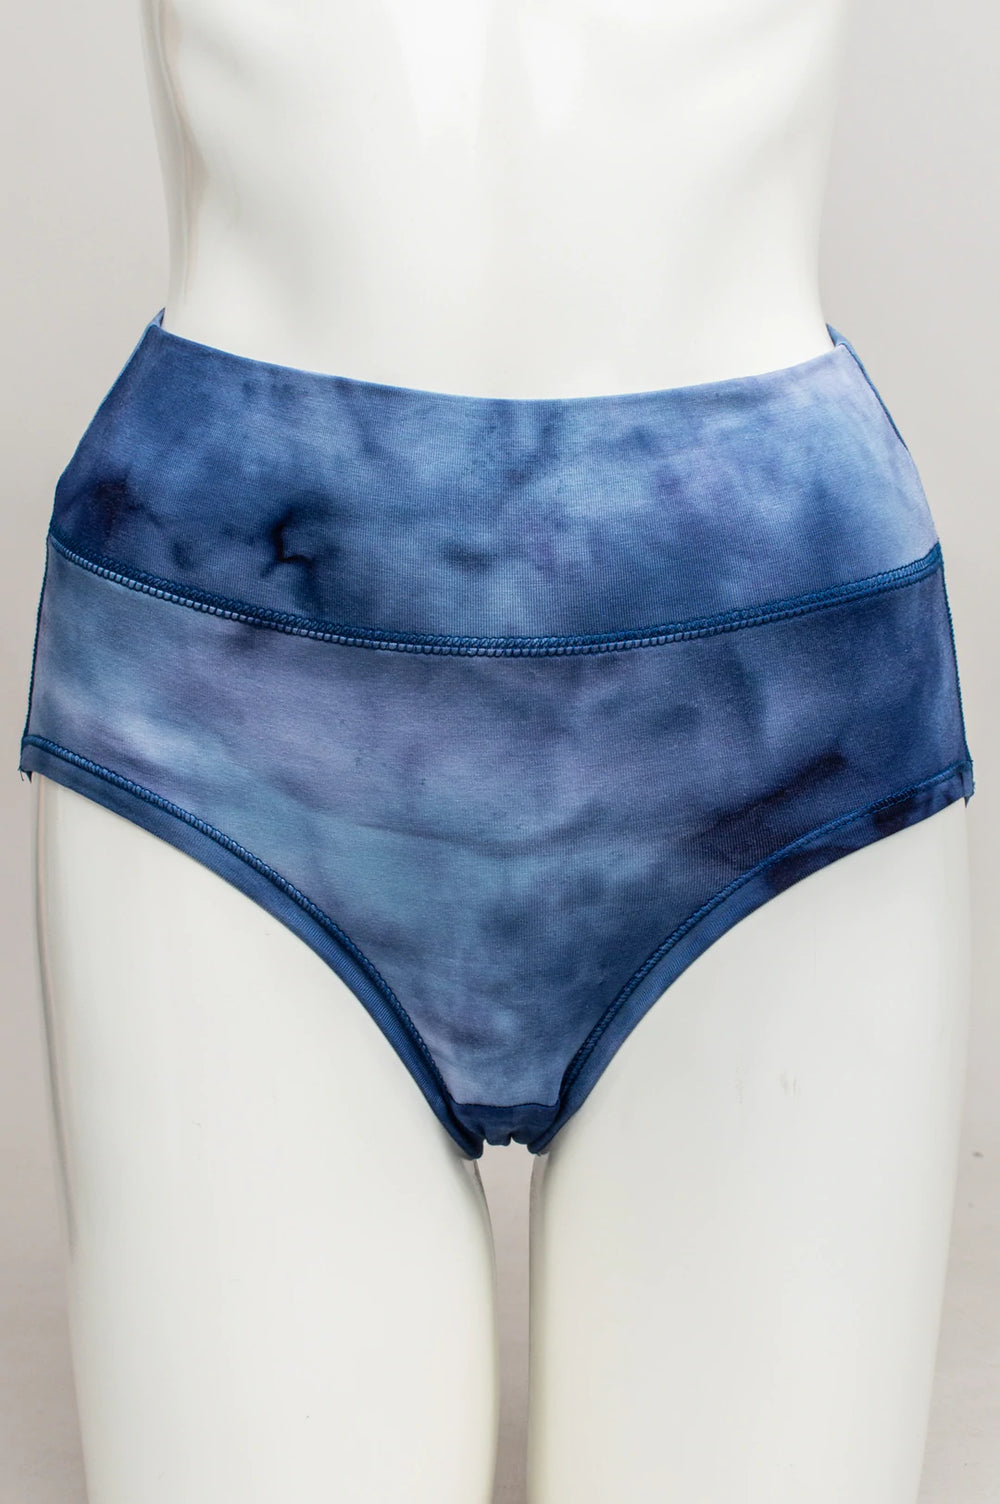 Felina | Signature Stretchy Lace Hi-Waisted Boyleg Panty (Blue Mist, Large)